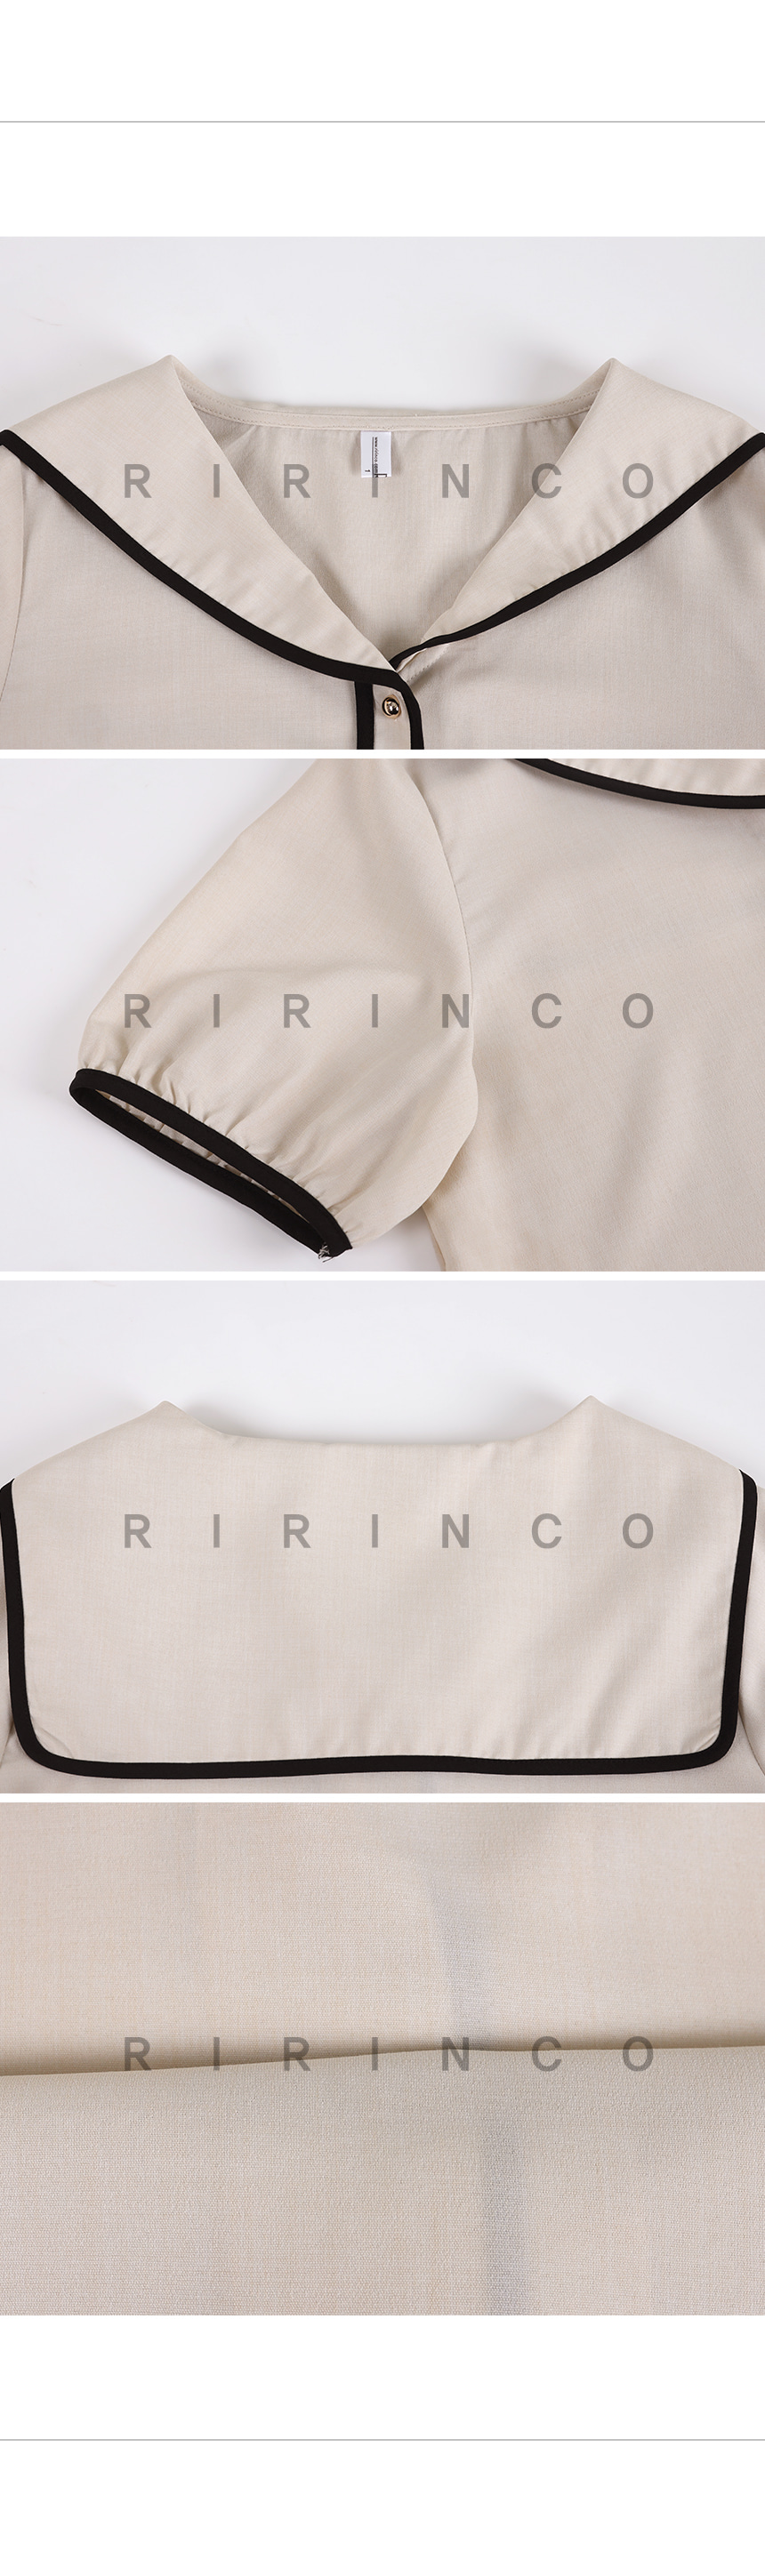 RIRINCO リネン風配色セーラーカラー半袖ブラウス